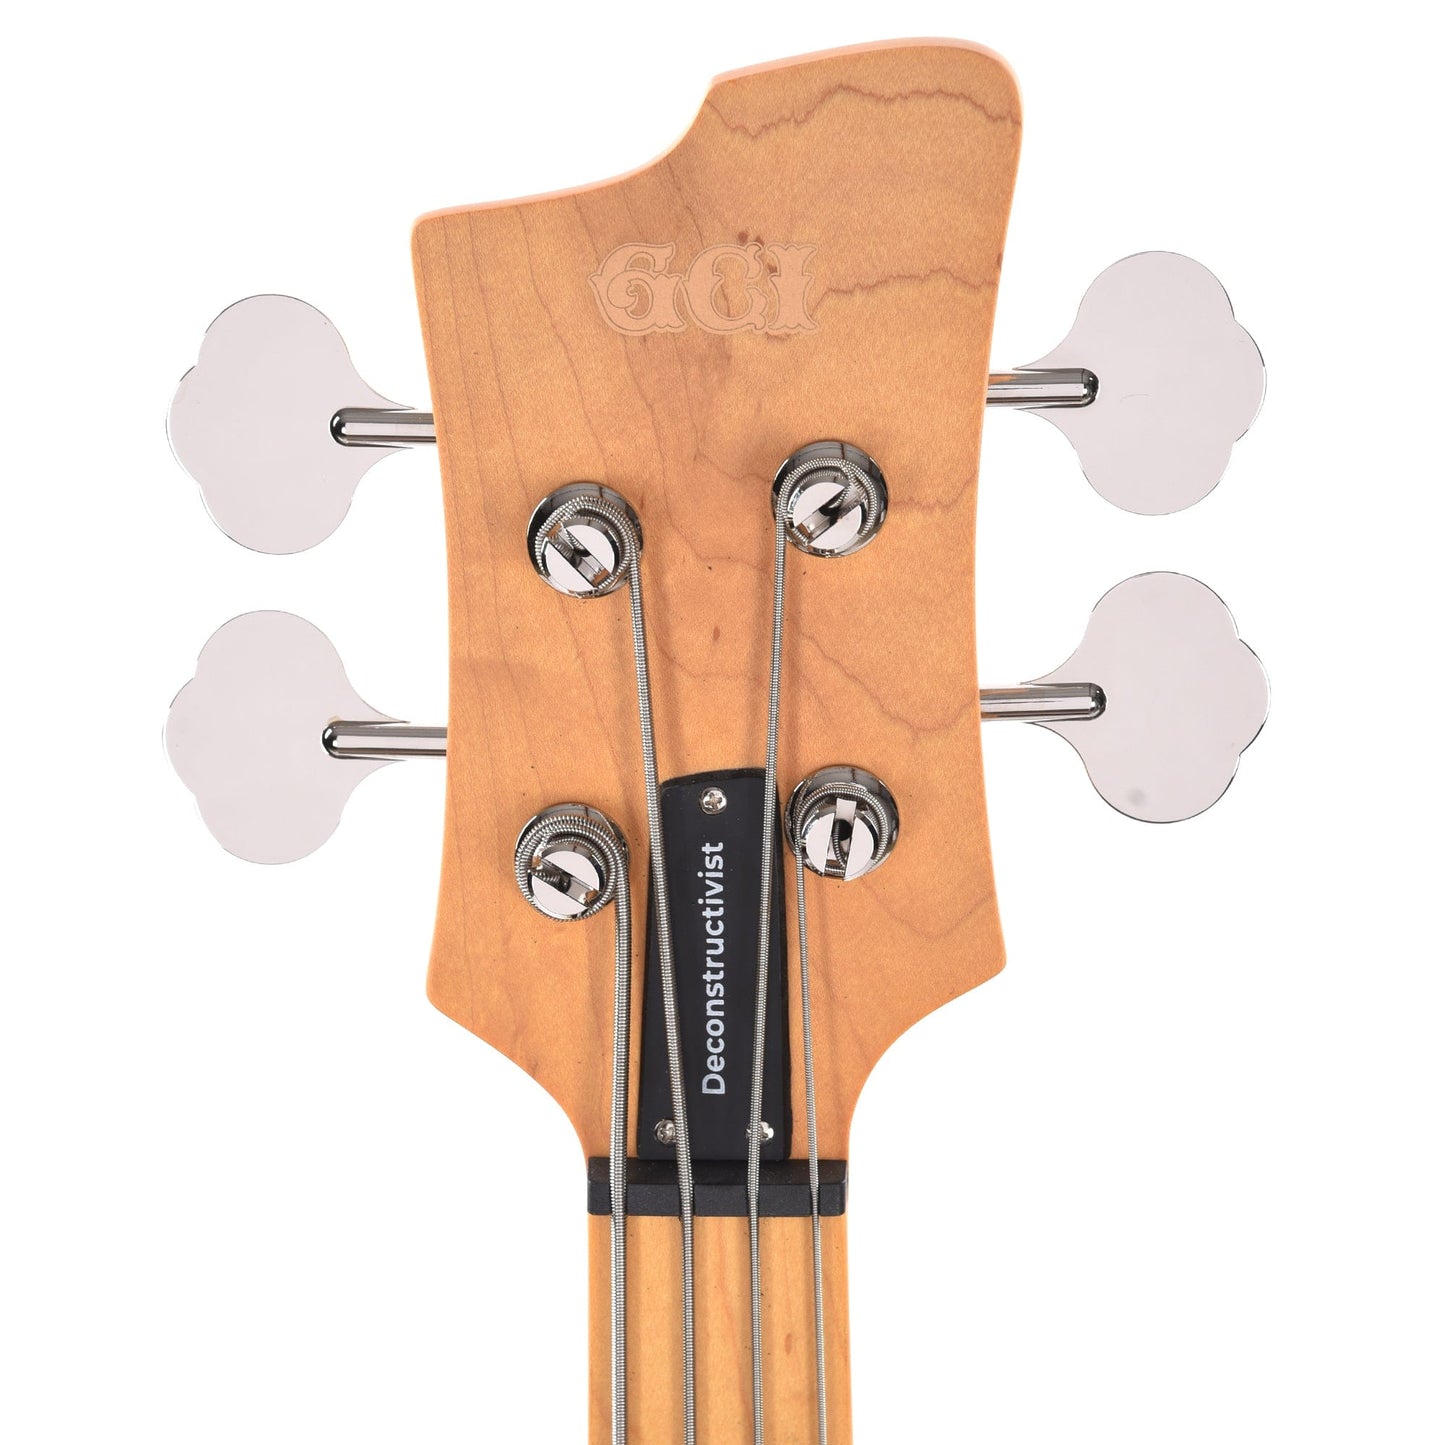 GCI Deconstructivist Bass Gloss Pearl White Bass Guitars / 4-String